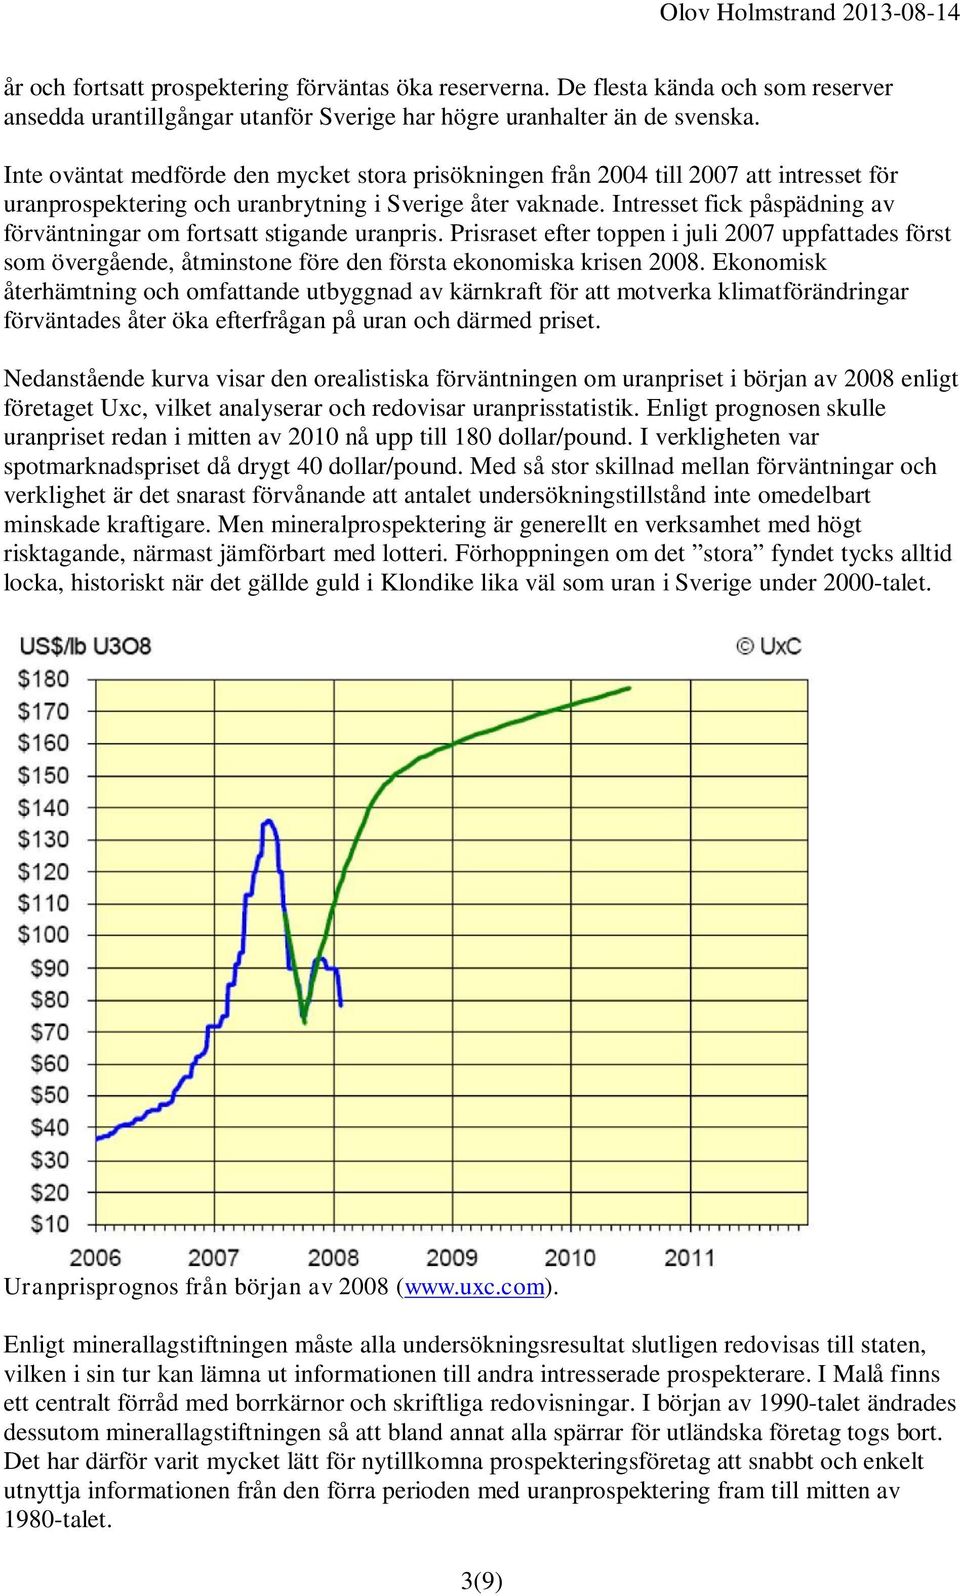 Intresset fick påspädning av förväntningar om fortsatt stigande uranpris. Prisraset efter toppen i juli 2007 uppfattades först som övergående, åtminstone före den första ekonomiska krisen 2008.